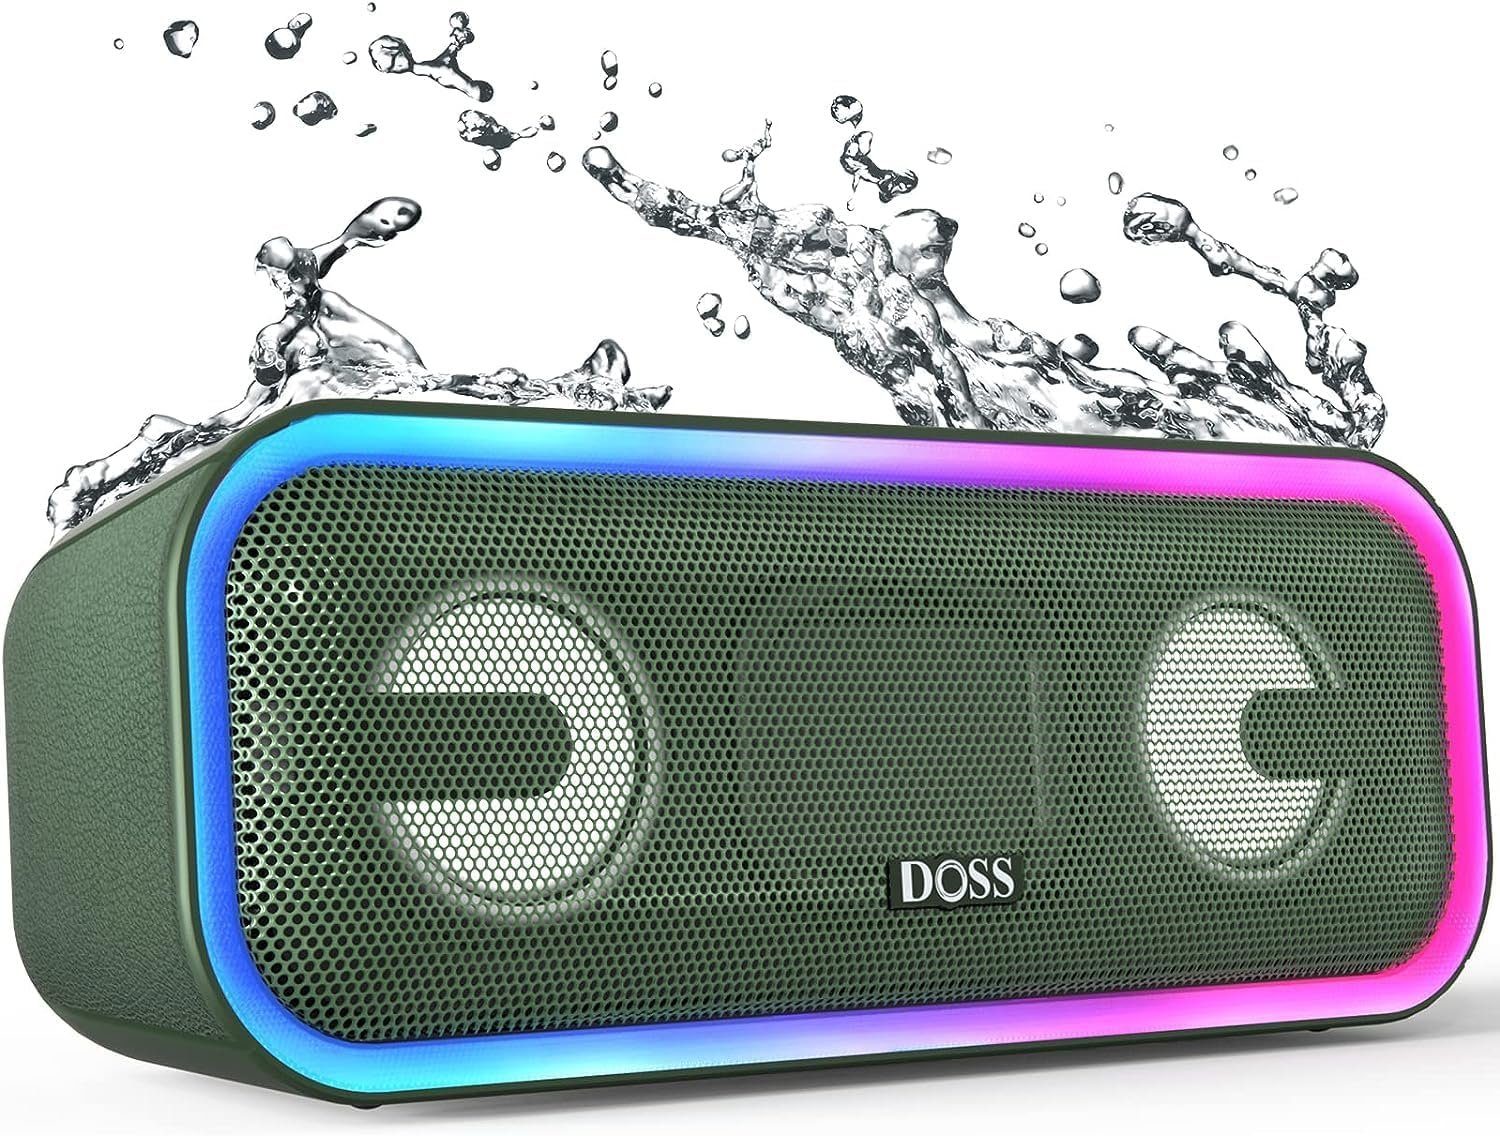 DOSS Stereo Wireless Lautsprecher (Bluetooth, 24 W, Bluetooth Musikbox Lichtern, Stereo-Pairing, IPX5 Wasserdicht, 15 Std) | Kinder-Lautsprecher